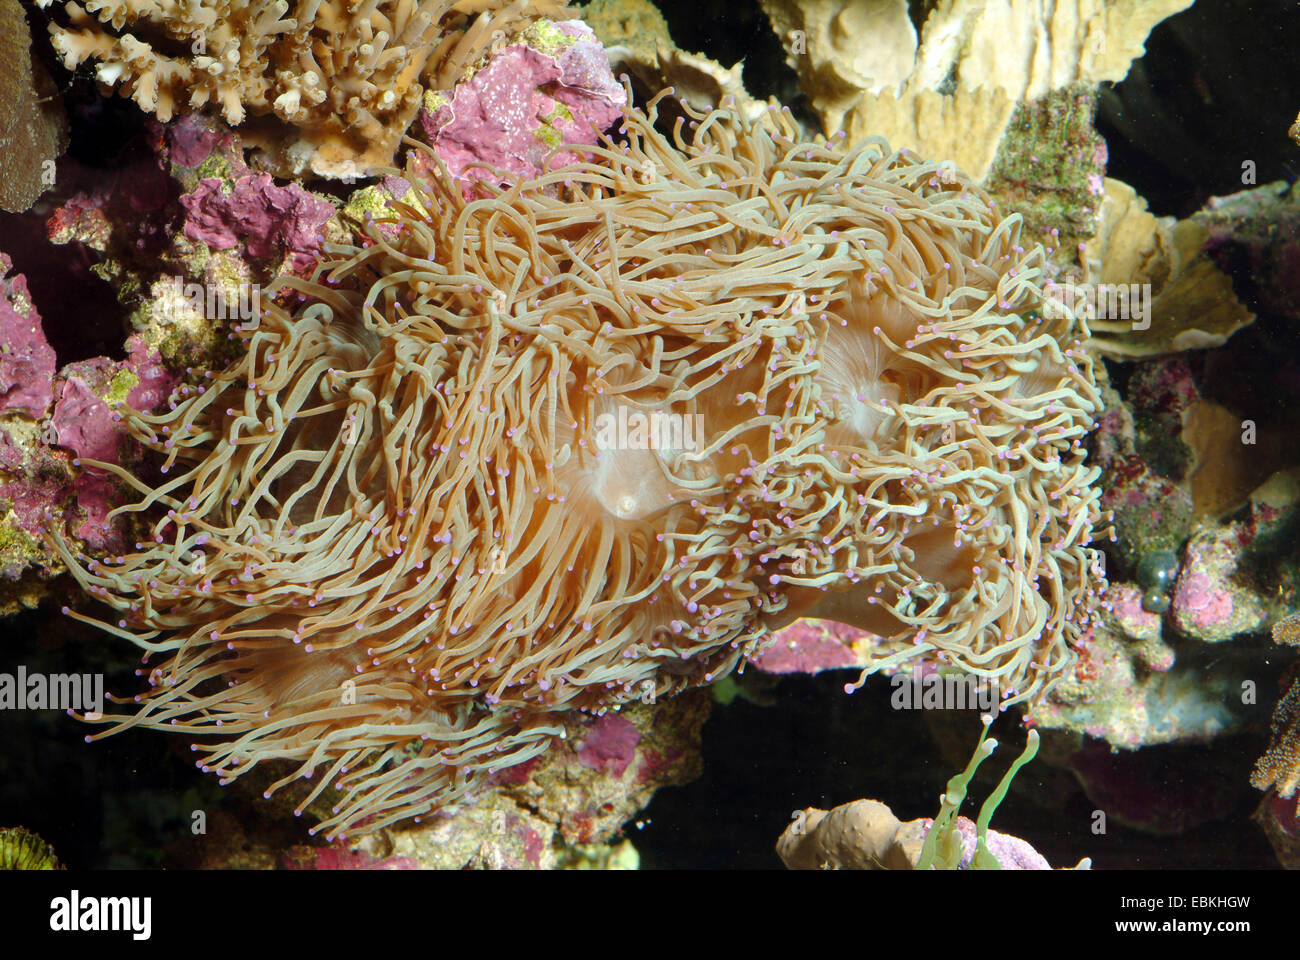 Eleganza Coral (Catalaphyllia jardinei), ad alto angolo di visione Foto Stock